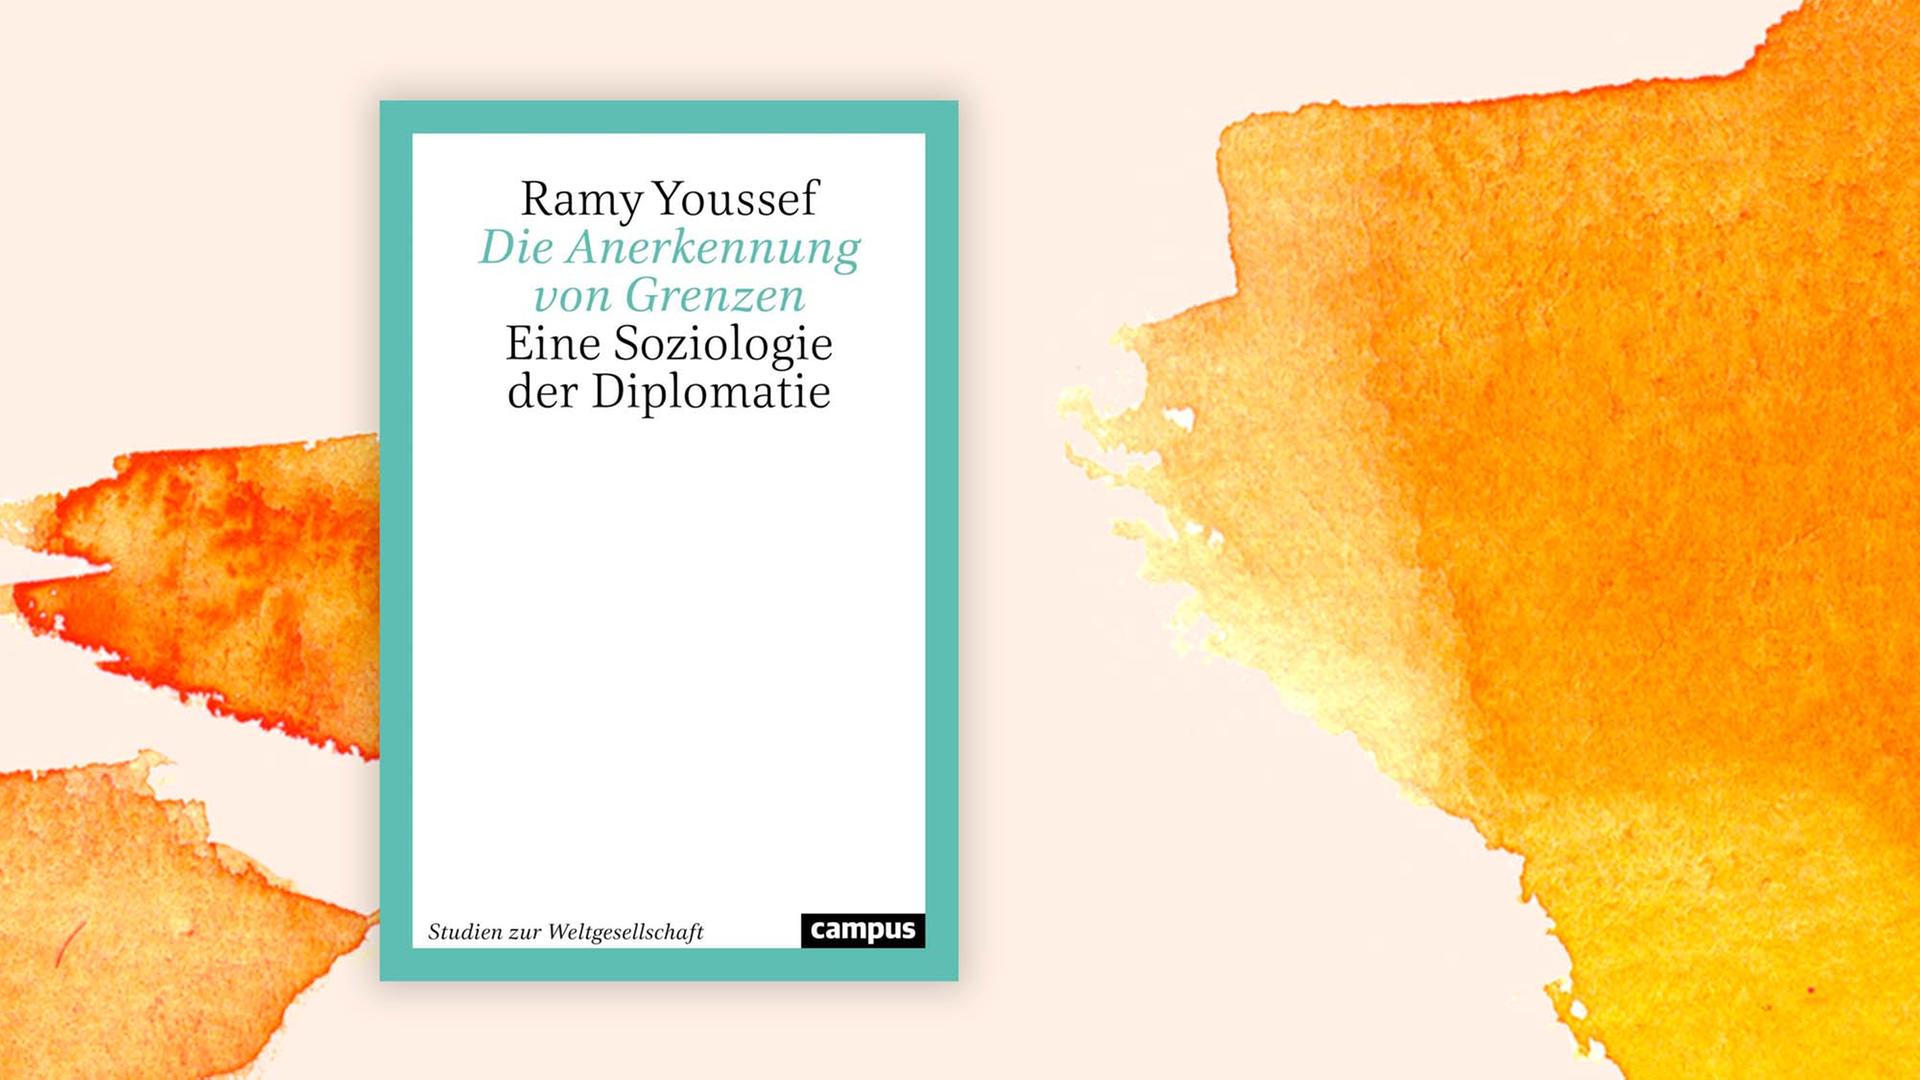 Buchcover: "Die Anerkennung von Grenzen" von Ramy Youssef